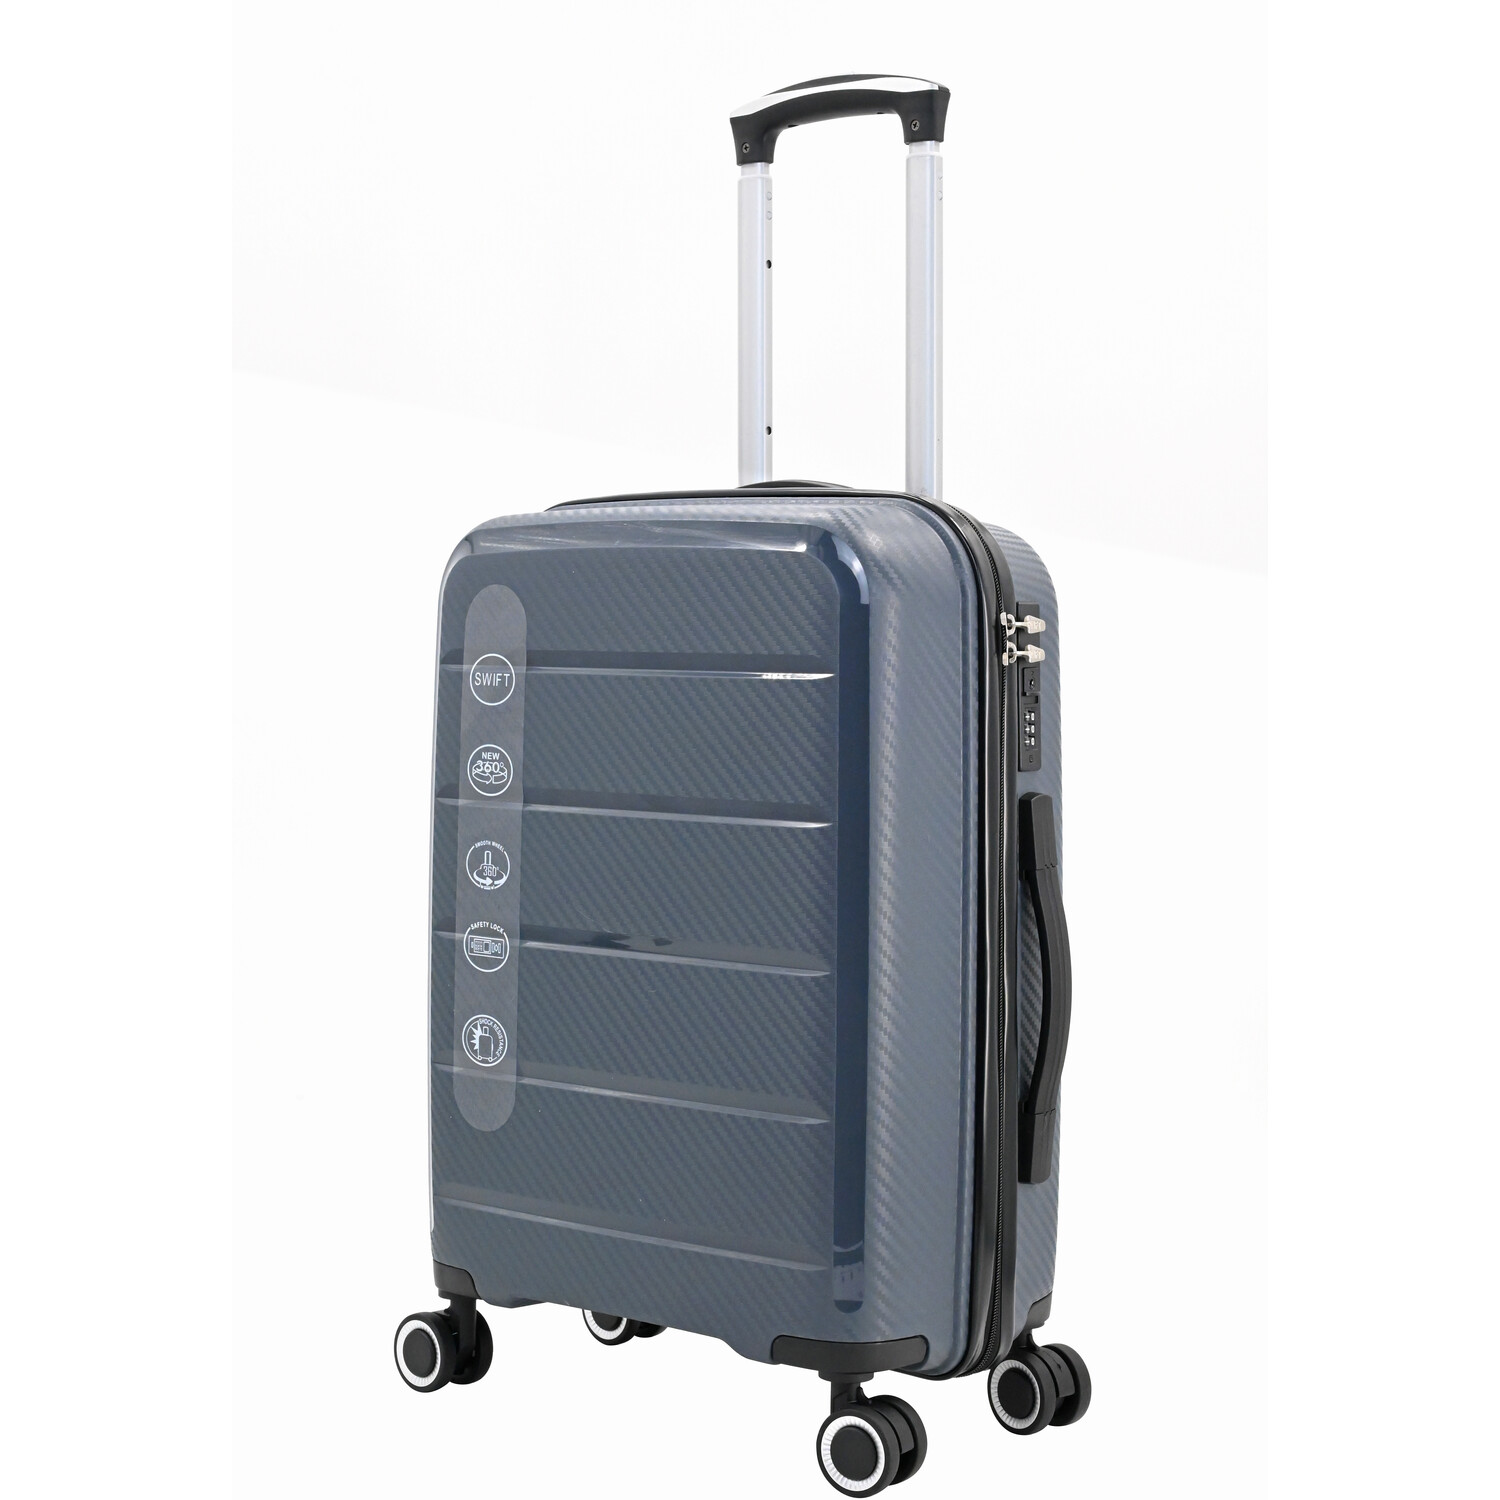 Swift Discovery Luggage Case - Grey / Large Case Image 2